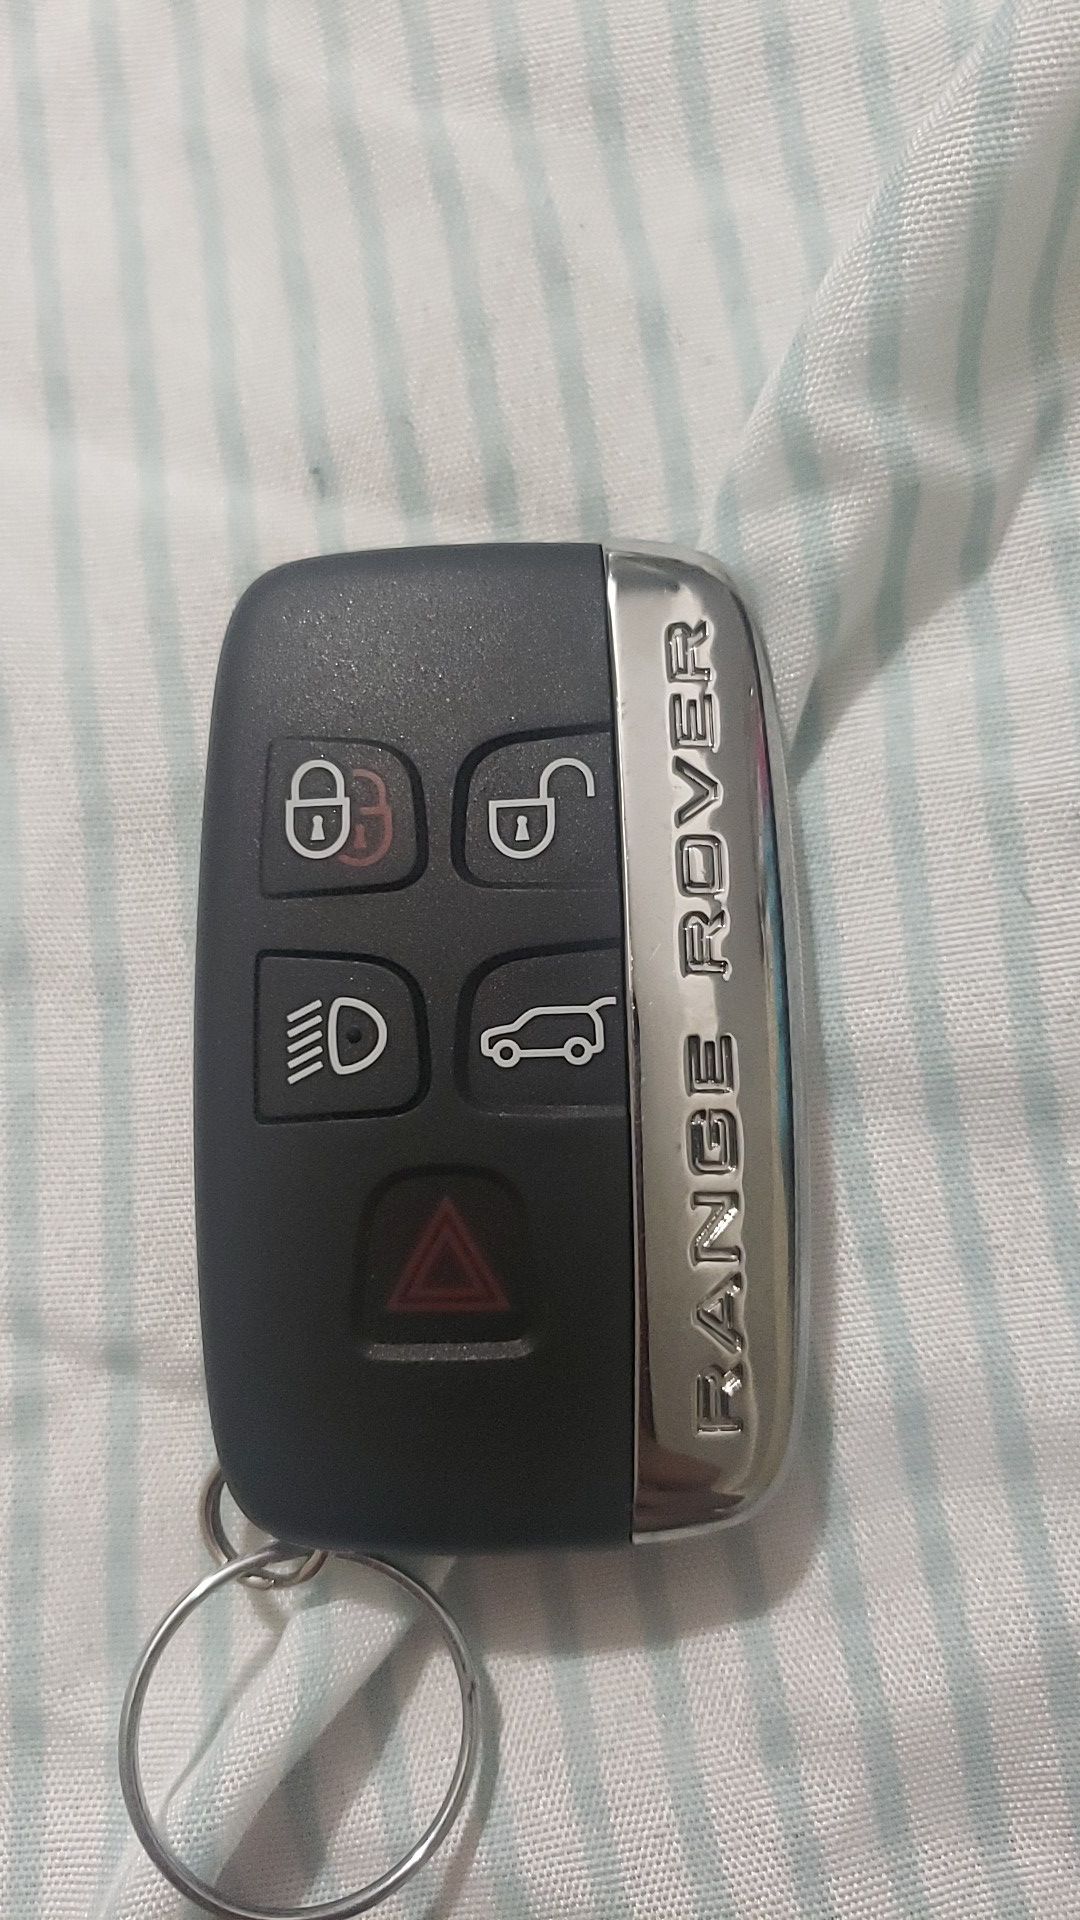 Range Rover Key Fob